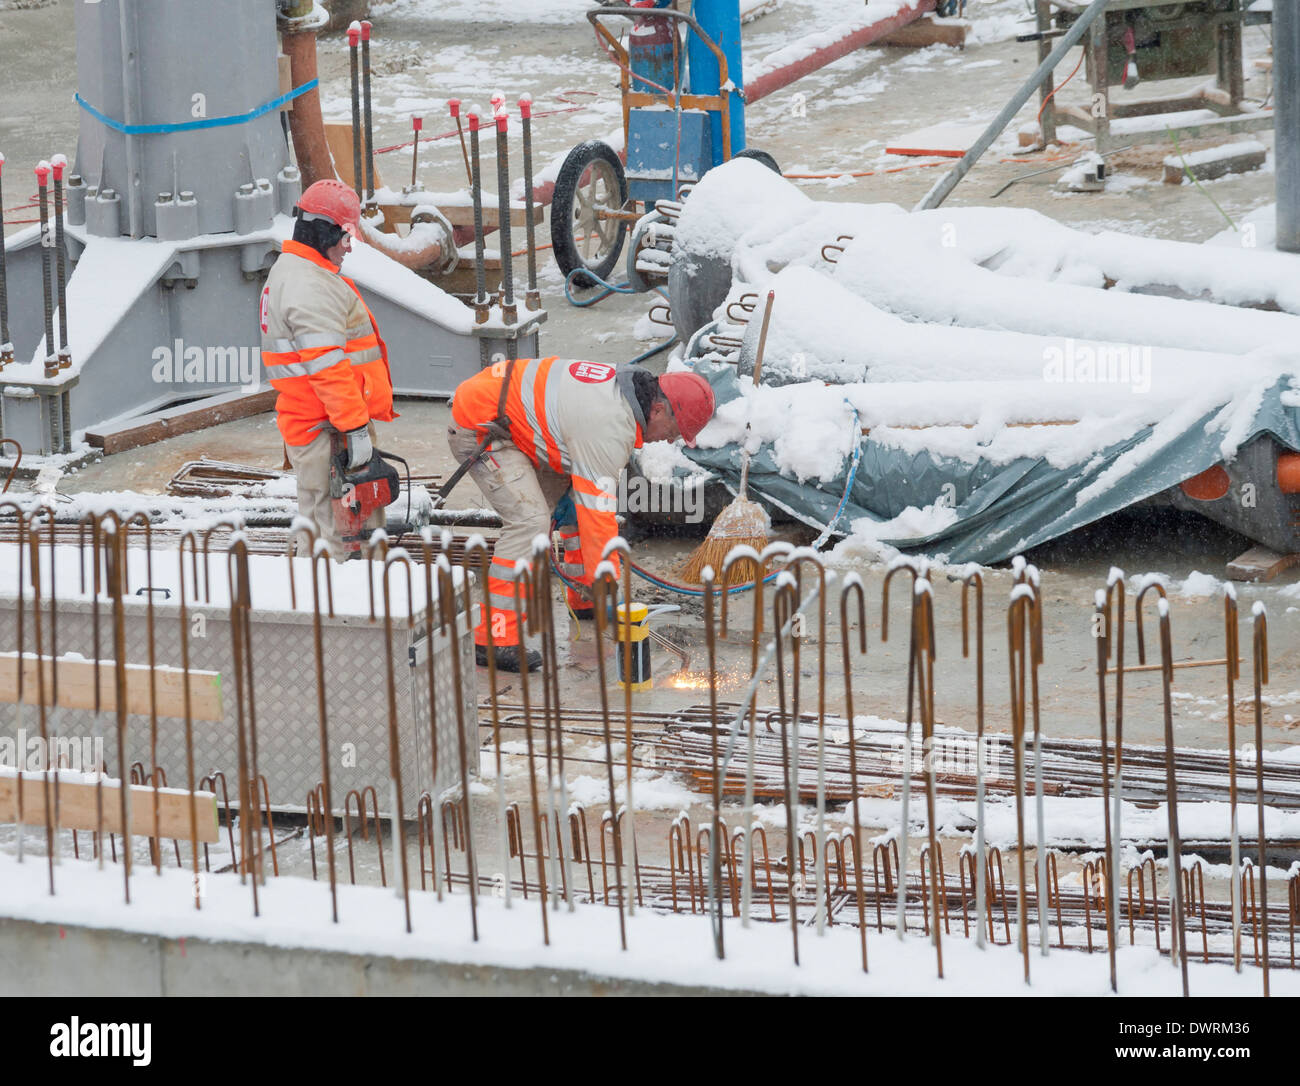 Bauarbeiter und Bautätigkeit auf einer verschneiten Winter-Baustelle in Zürich, Schweiz Stockfoto